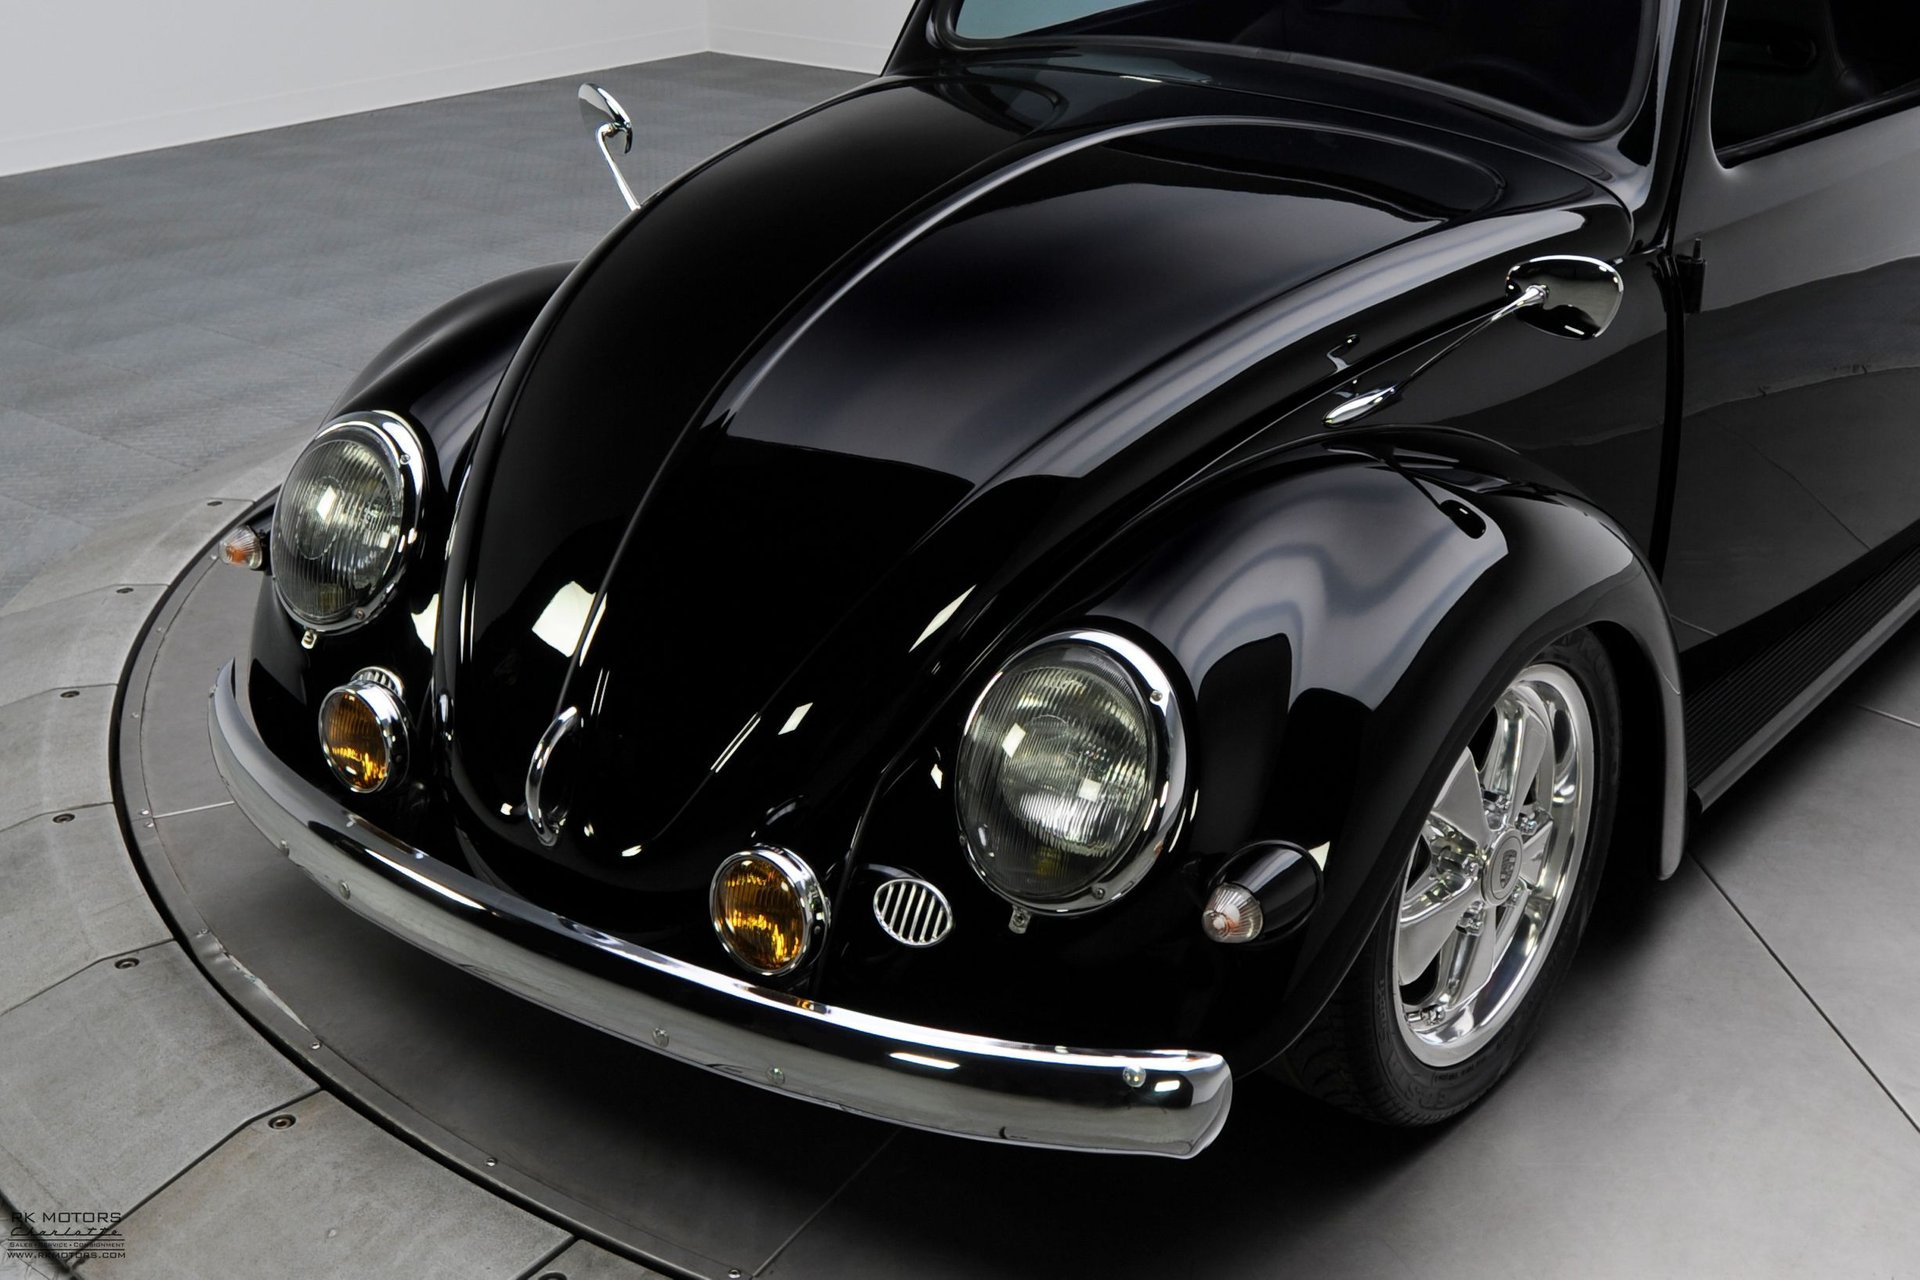 For Sale 1957 Volkswagen Type 1 Beetle